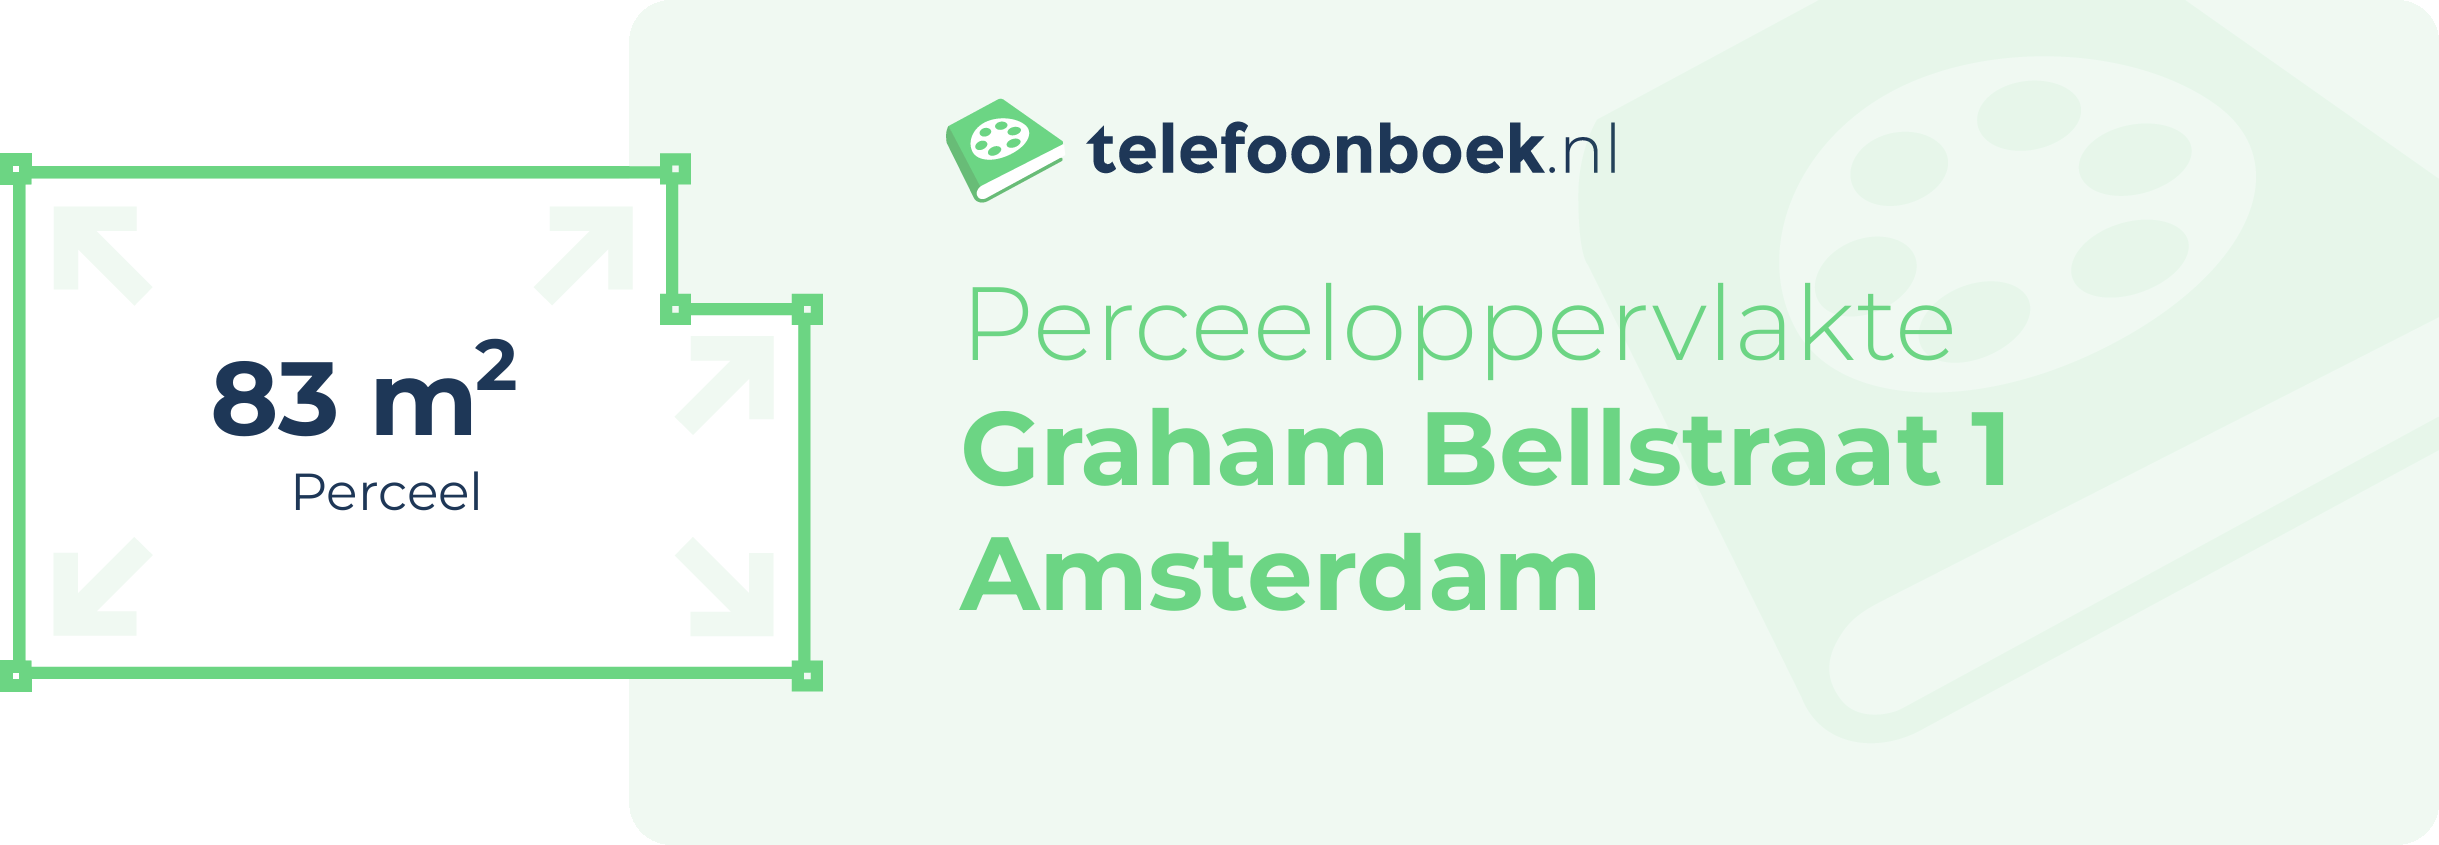 Perceeloppervlakte Graham Bellstraat 1 Amsterdam